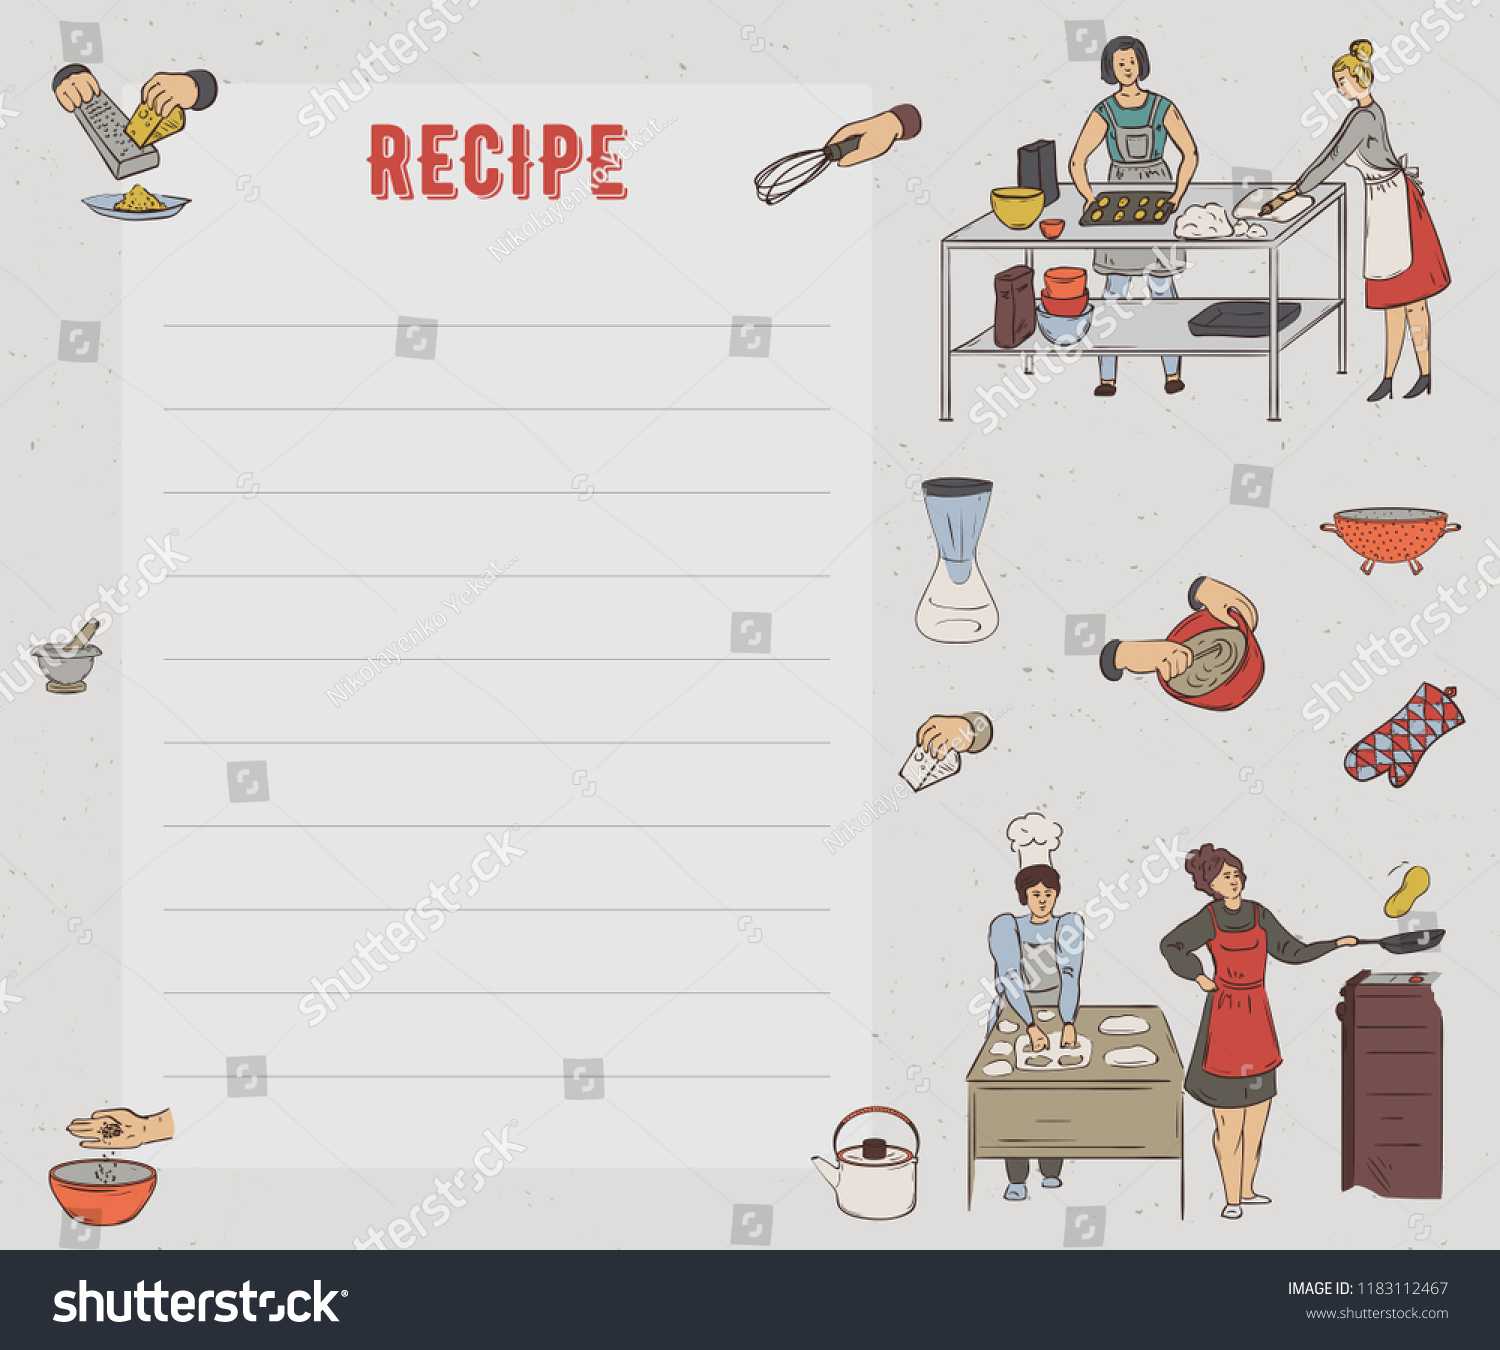 Recipe Card Cookbook Page Design Template Stock Image Inside Recipe Card Design Template